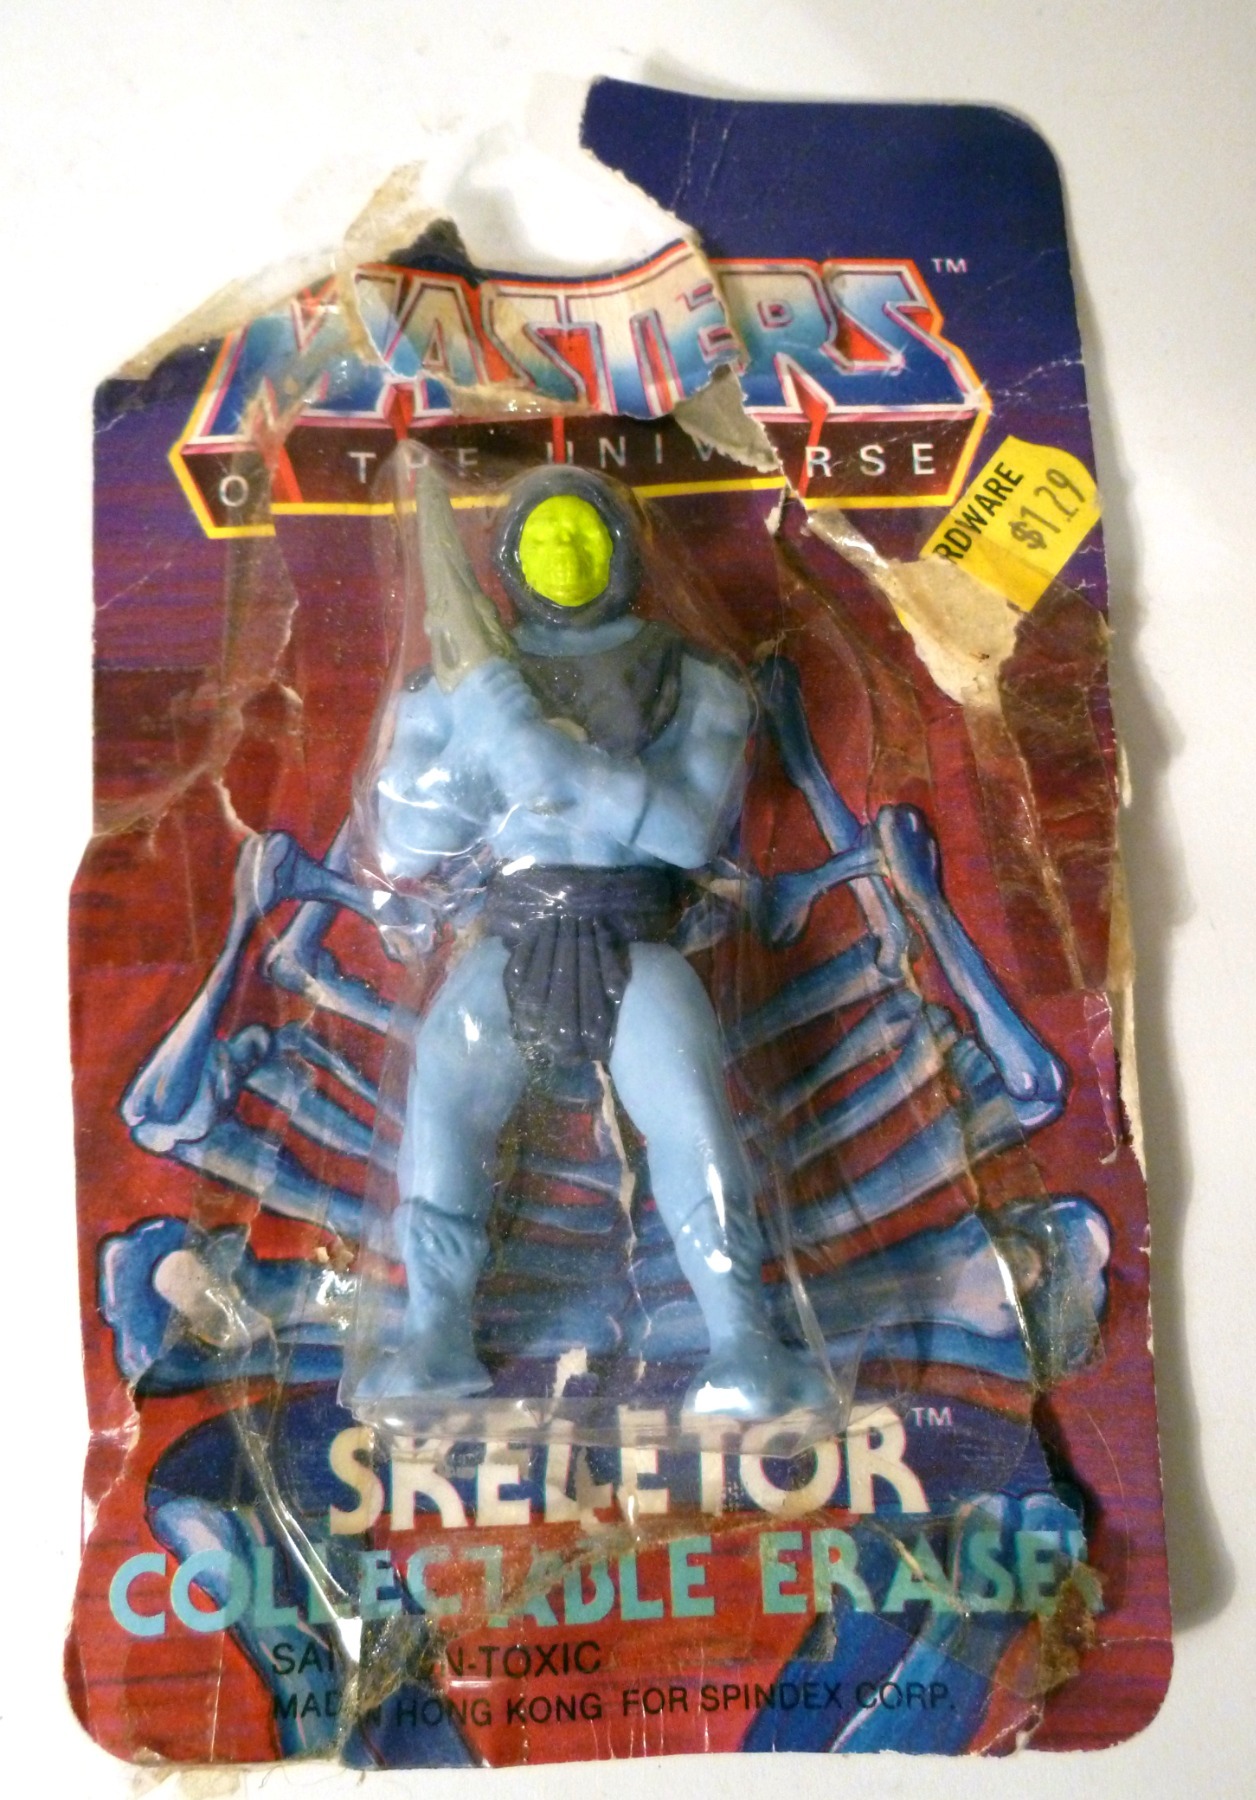 Skeletor Collectabal Eraser - Spindex Corp.